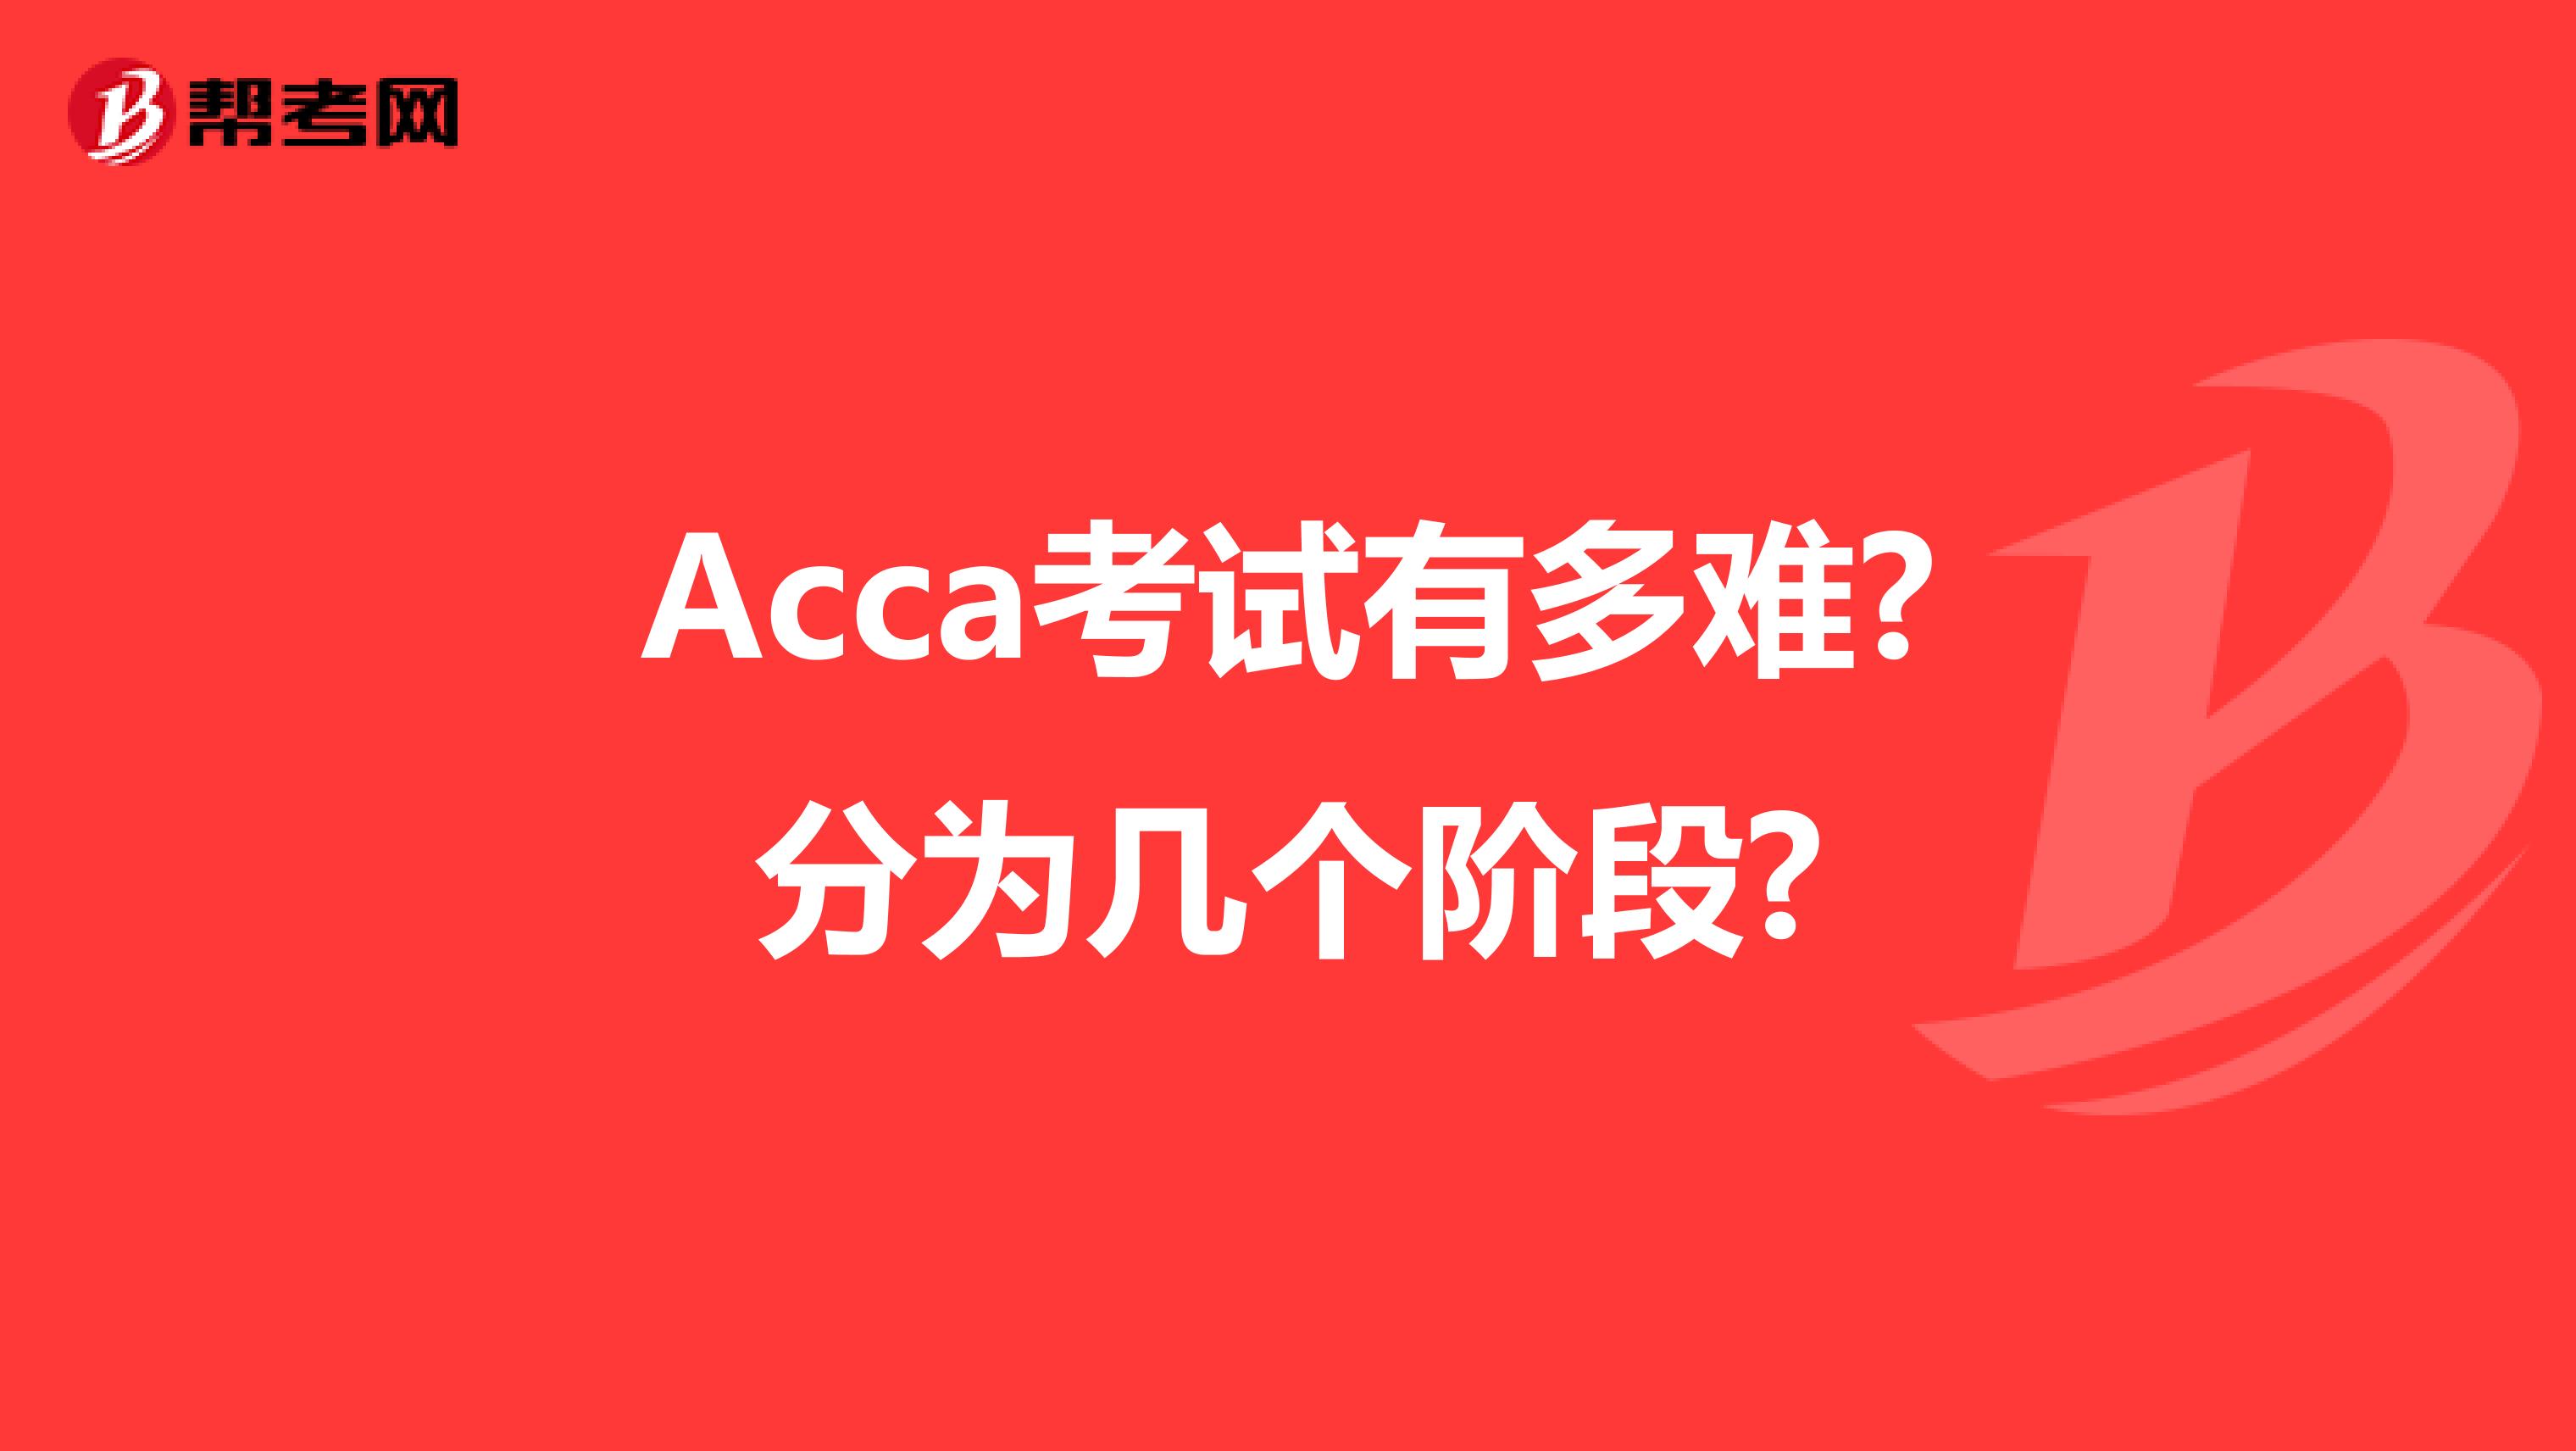 Acca考试有多难?分为几个阶段?